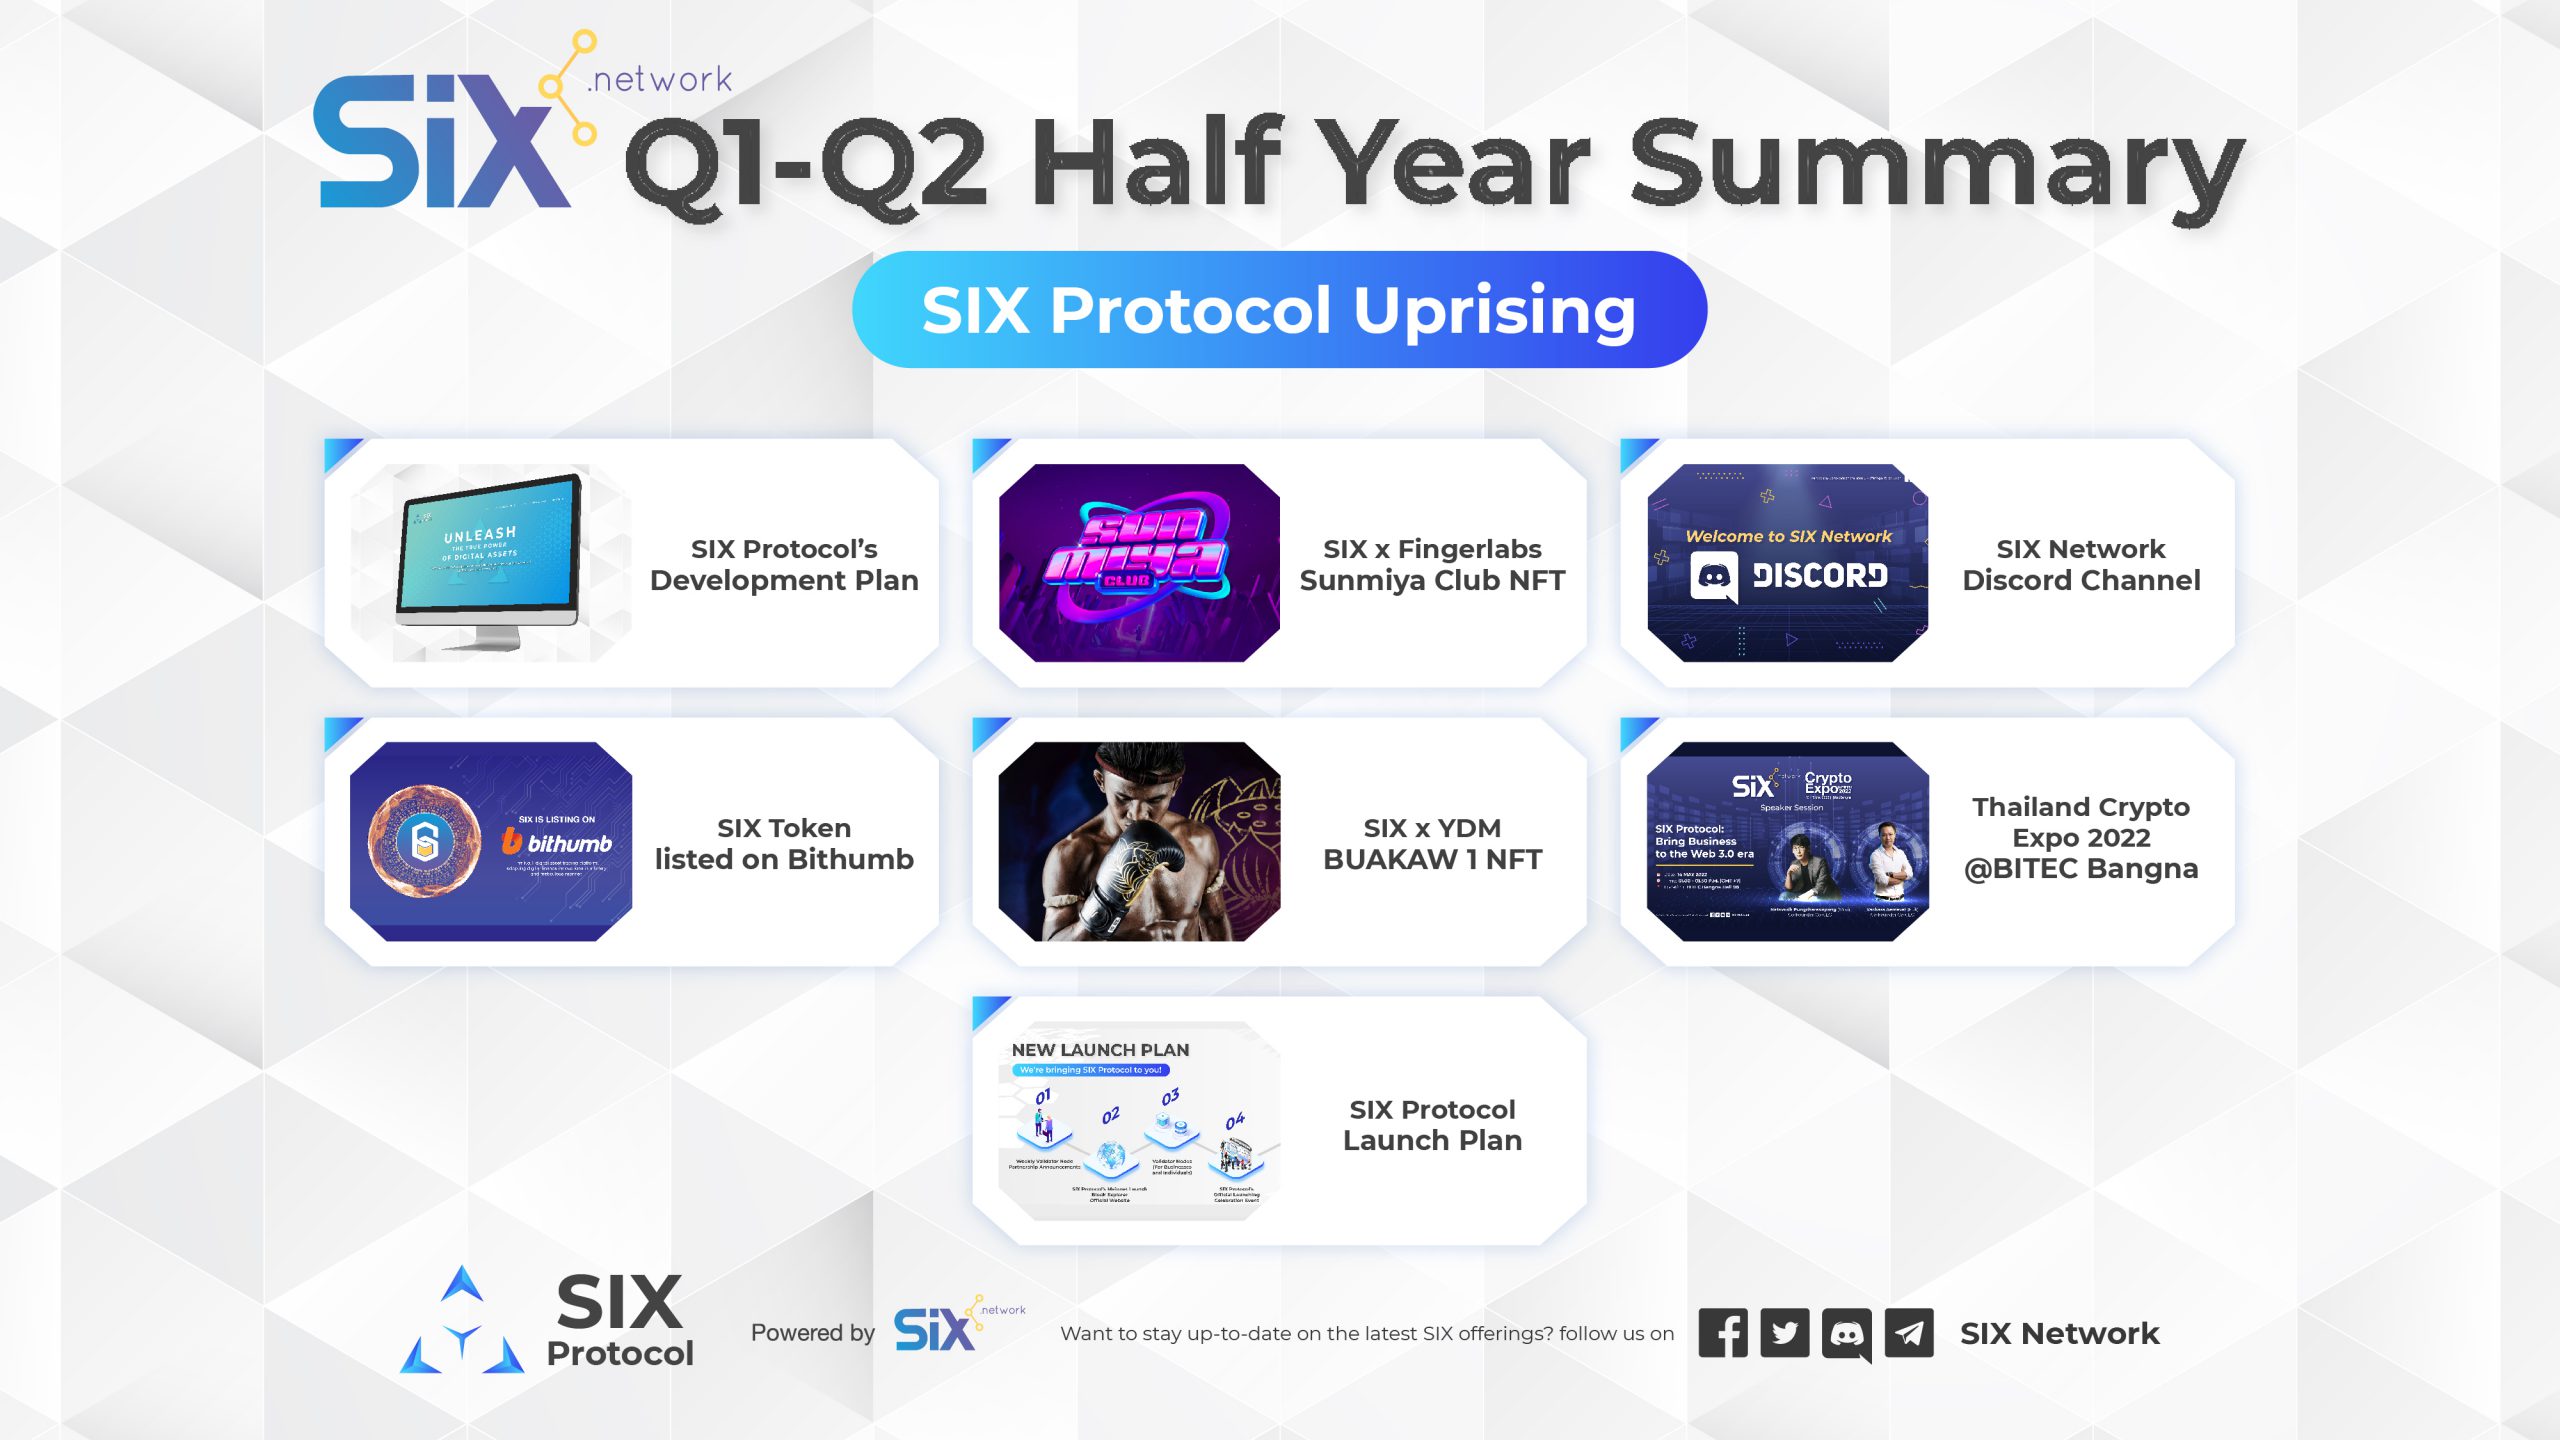 SIX Network Q1-Q2 Half Year Summary